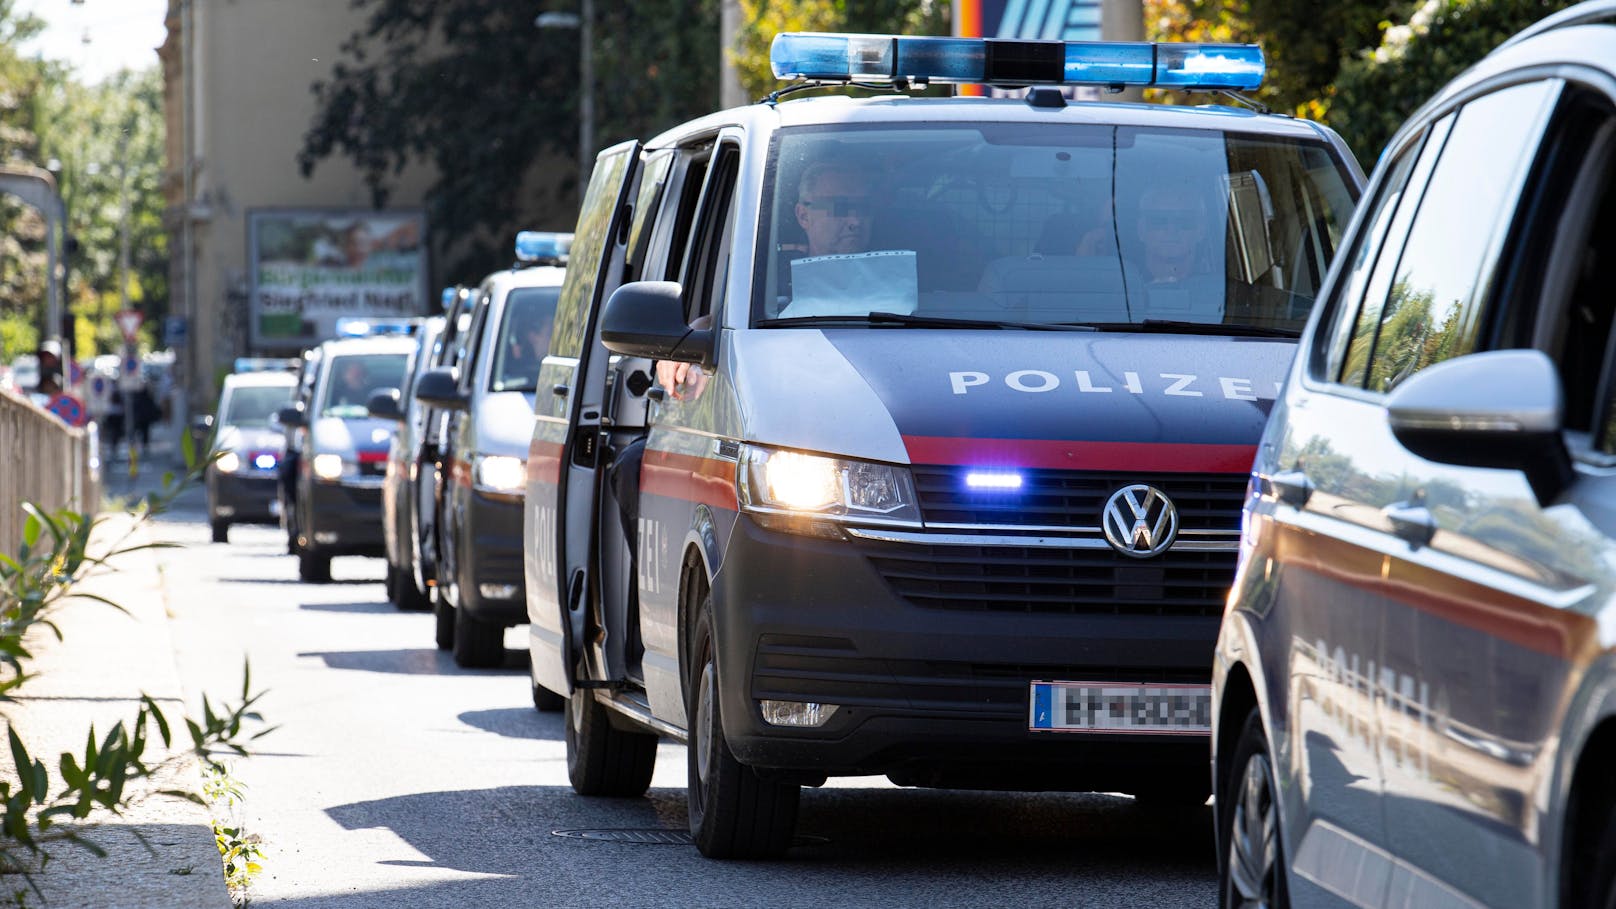 <a href="https://www.heute.at/s/duo-stach-auf-frau-51-ein-alarmfahndung-laeuft-100171954">Nach einem Überfall auf eine Frau in dem Haus ihrer Tochter</a> in Graz gelang es der Polizei zwei Tatverdächtige festzunehmen. (Symbolbild)